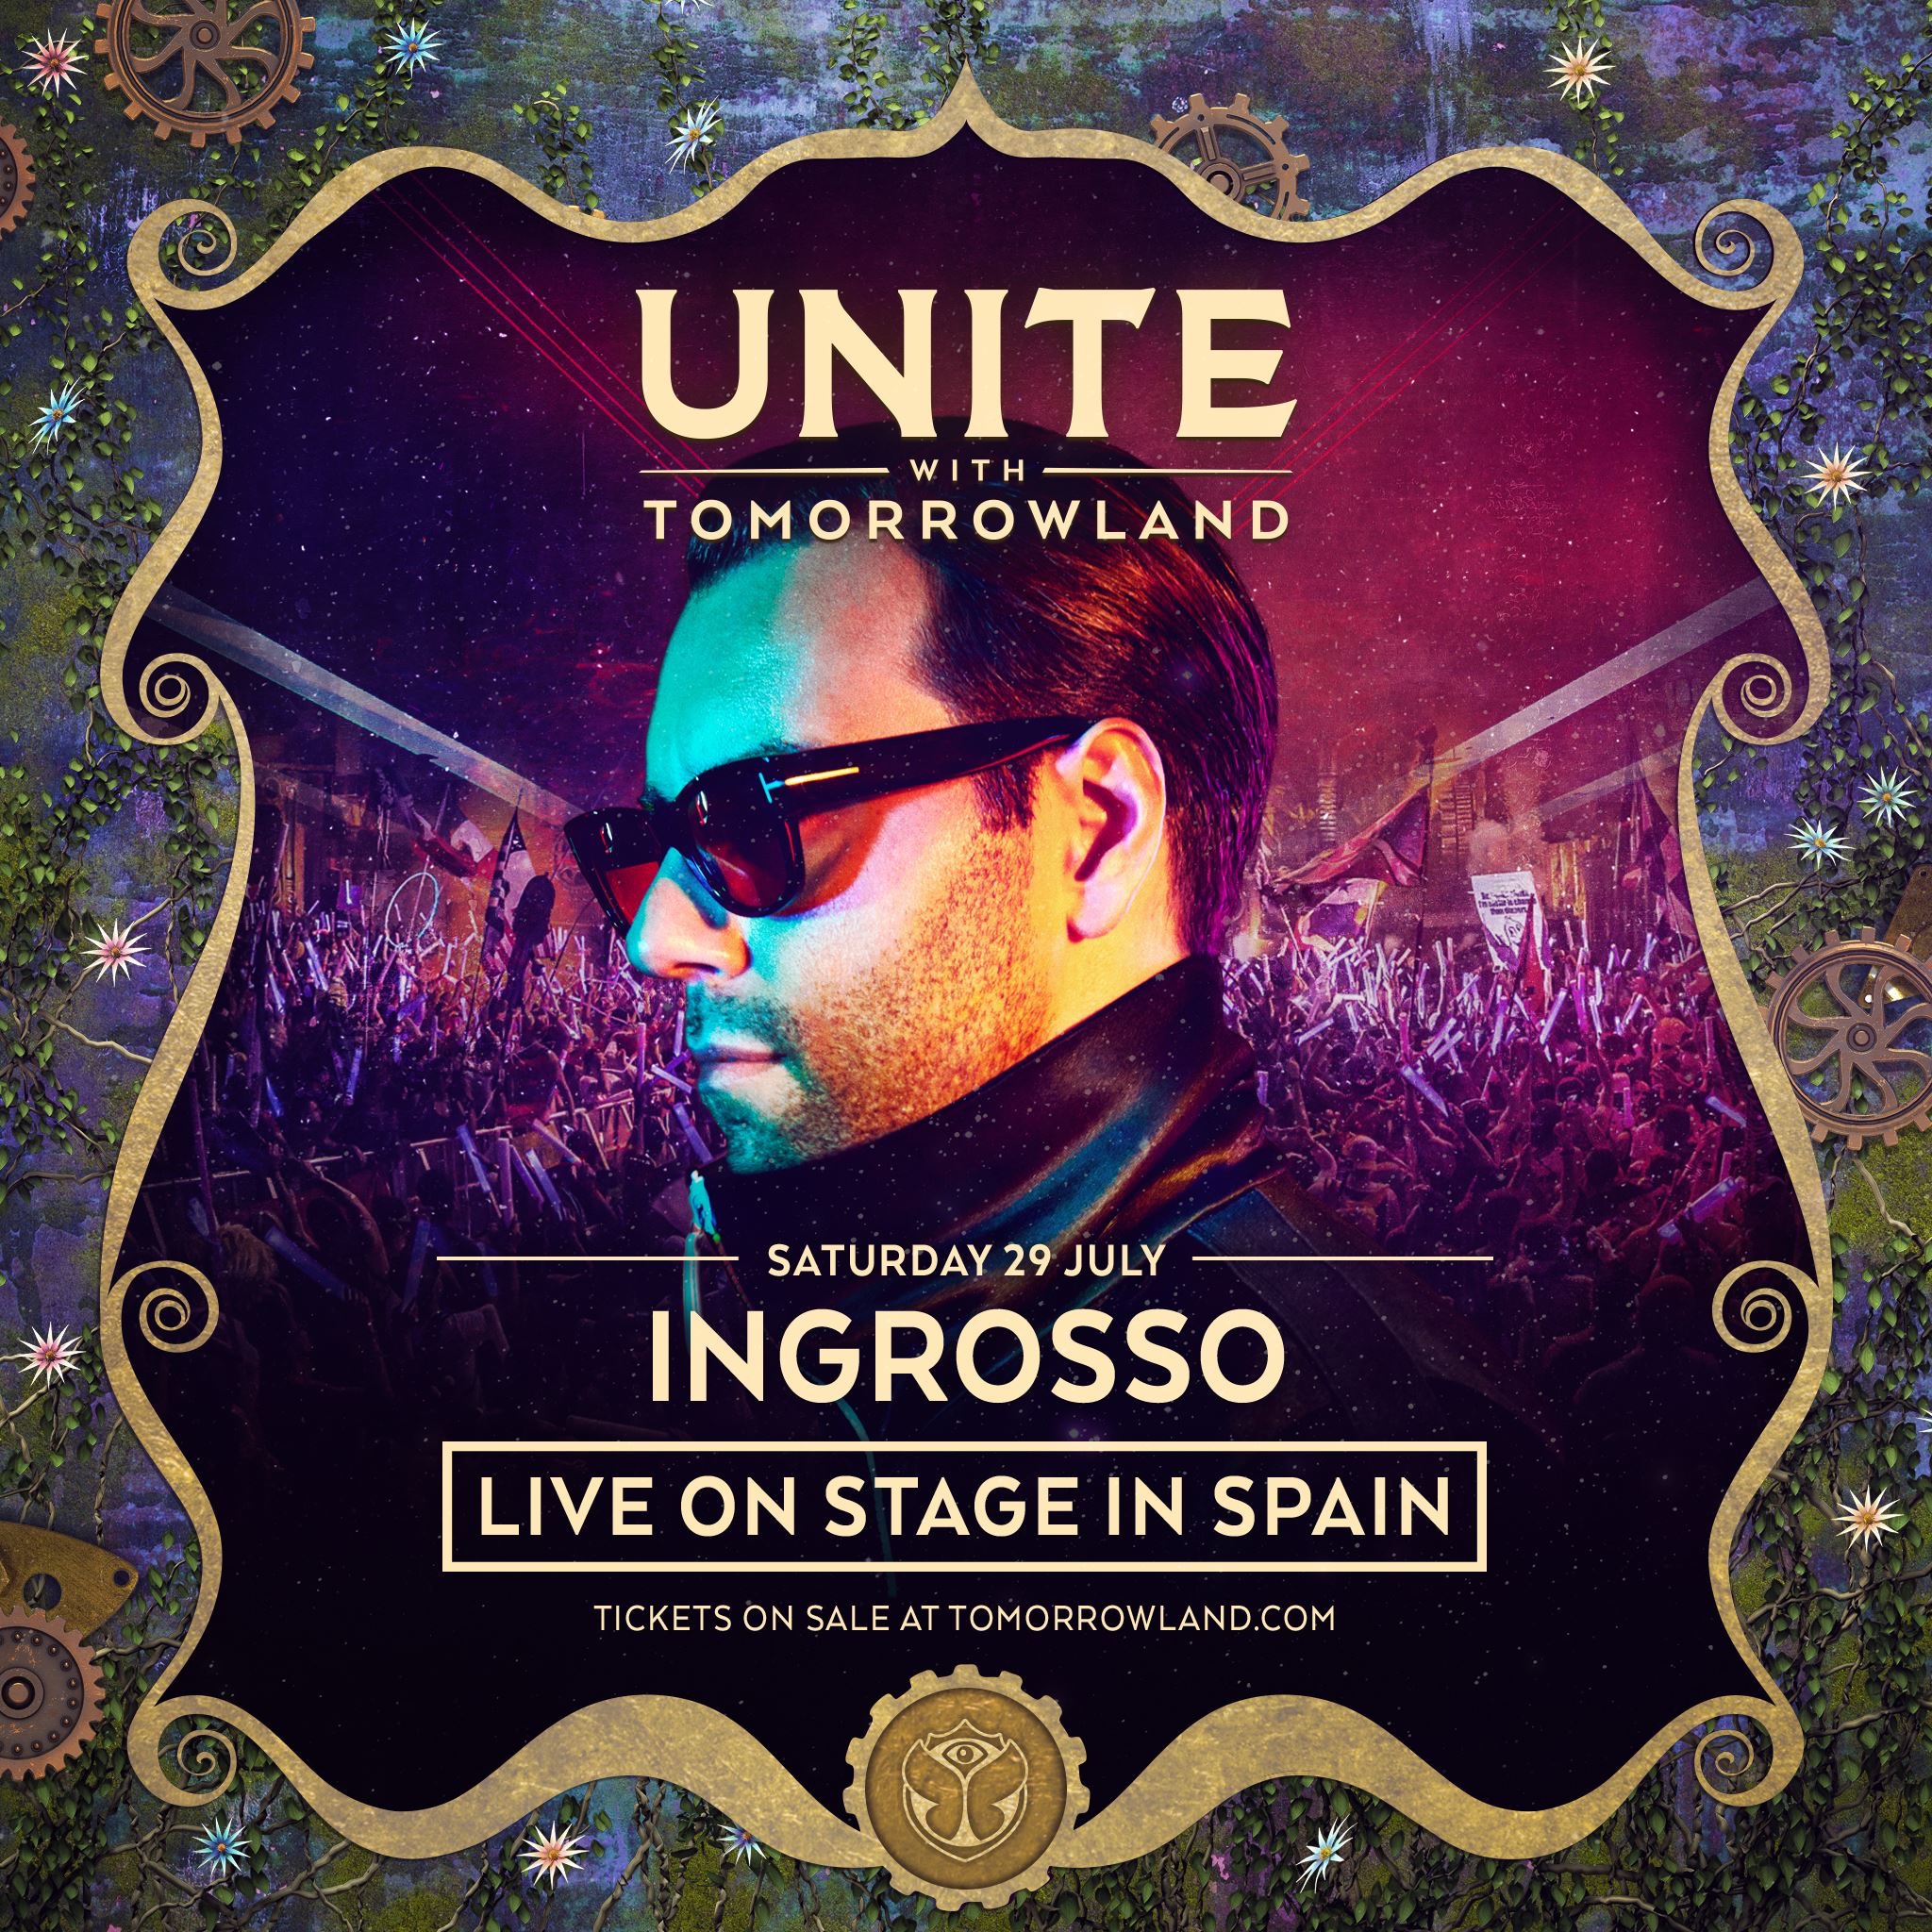 Nueva confirmación: Ingrosso estará en Unite Tomorrowland Barcelona